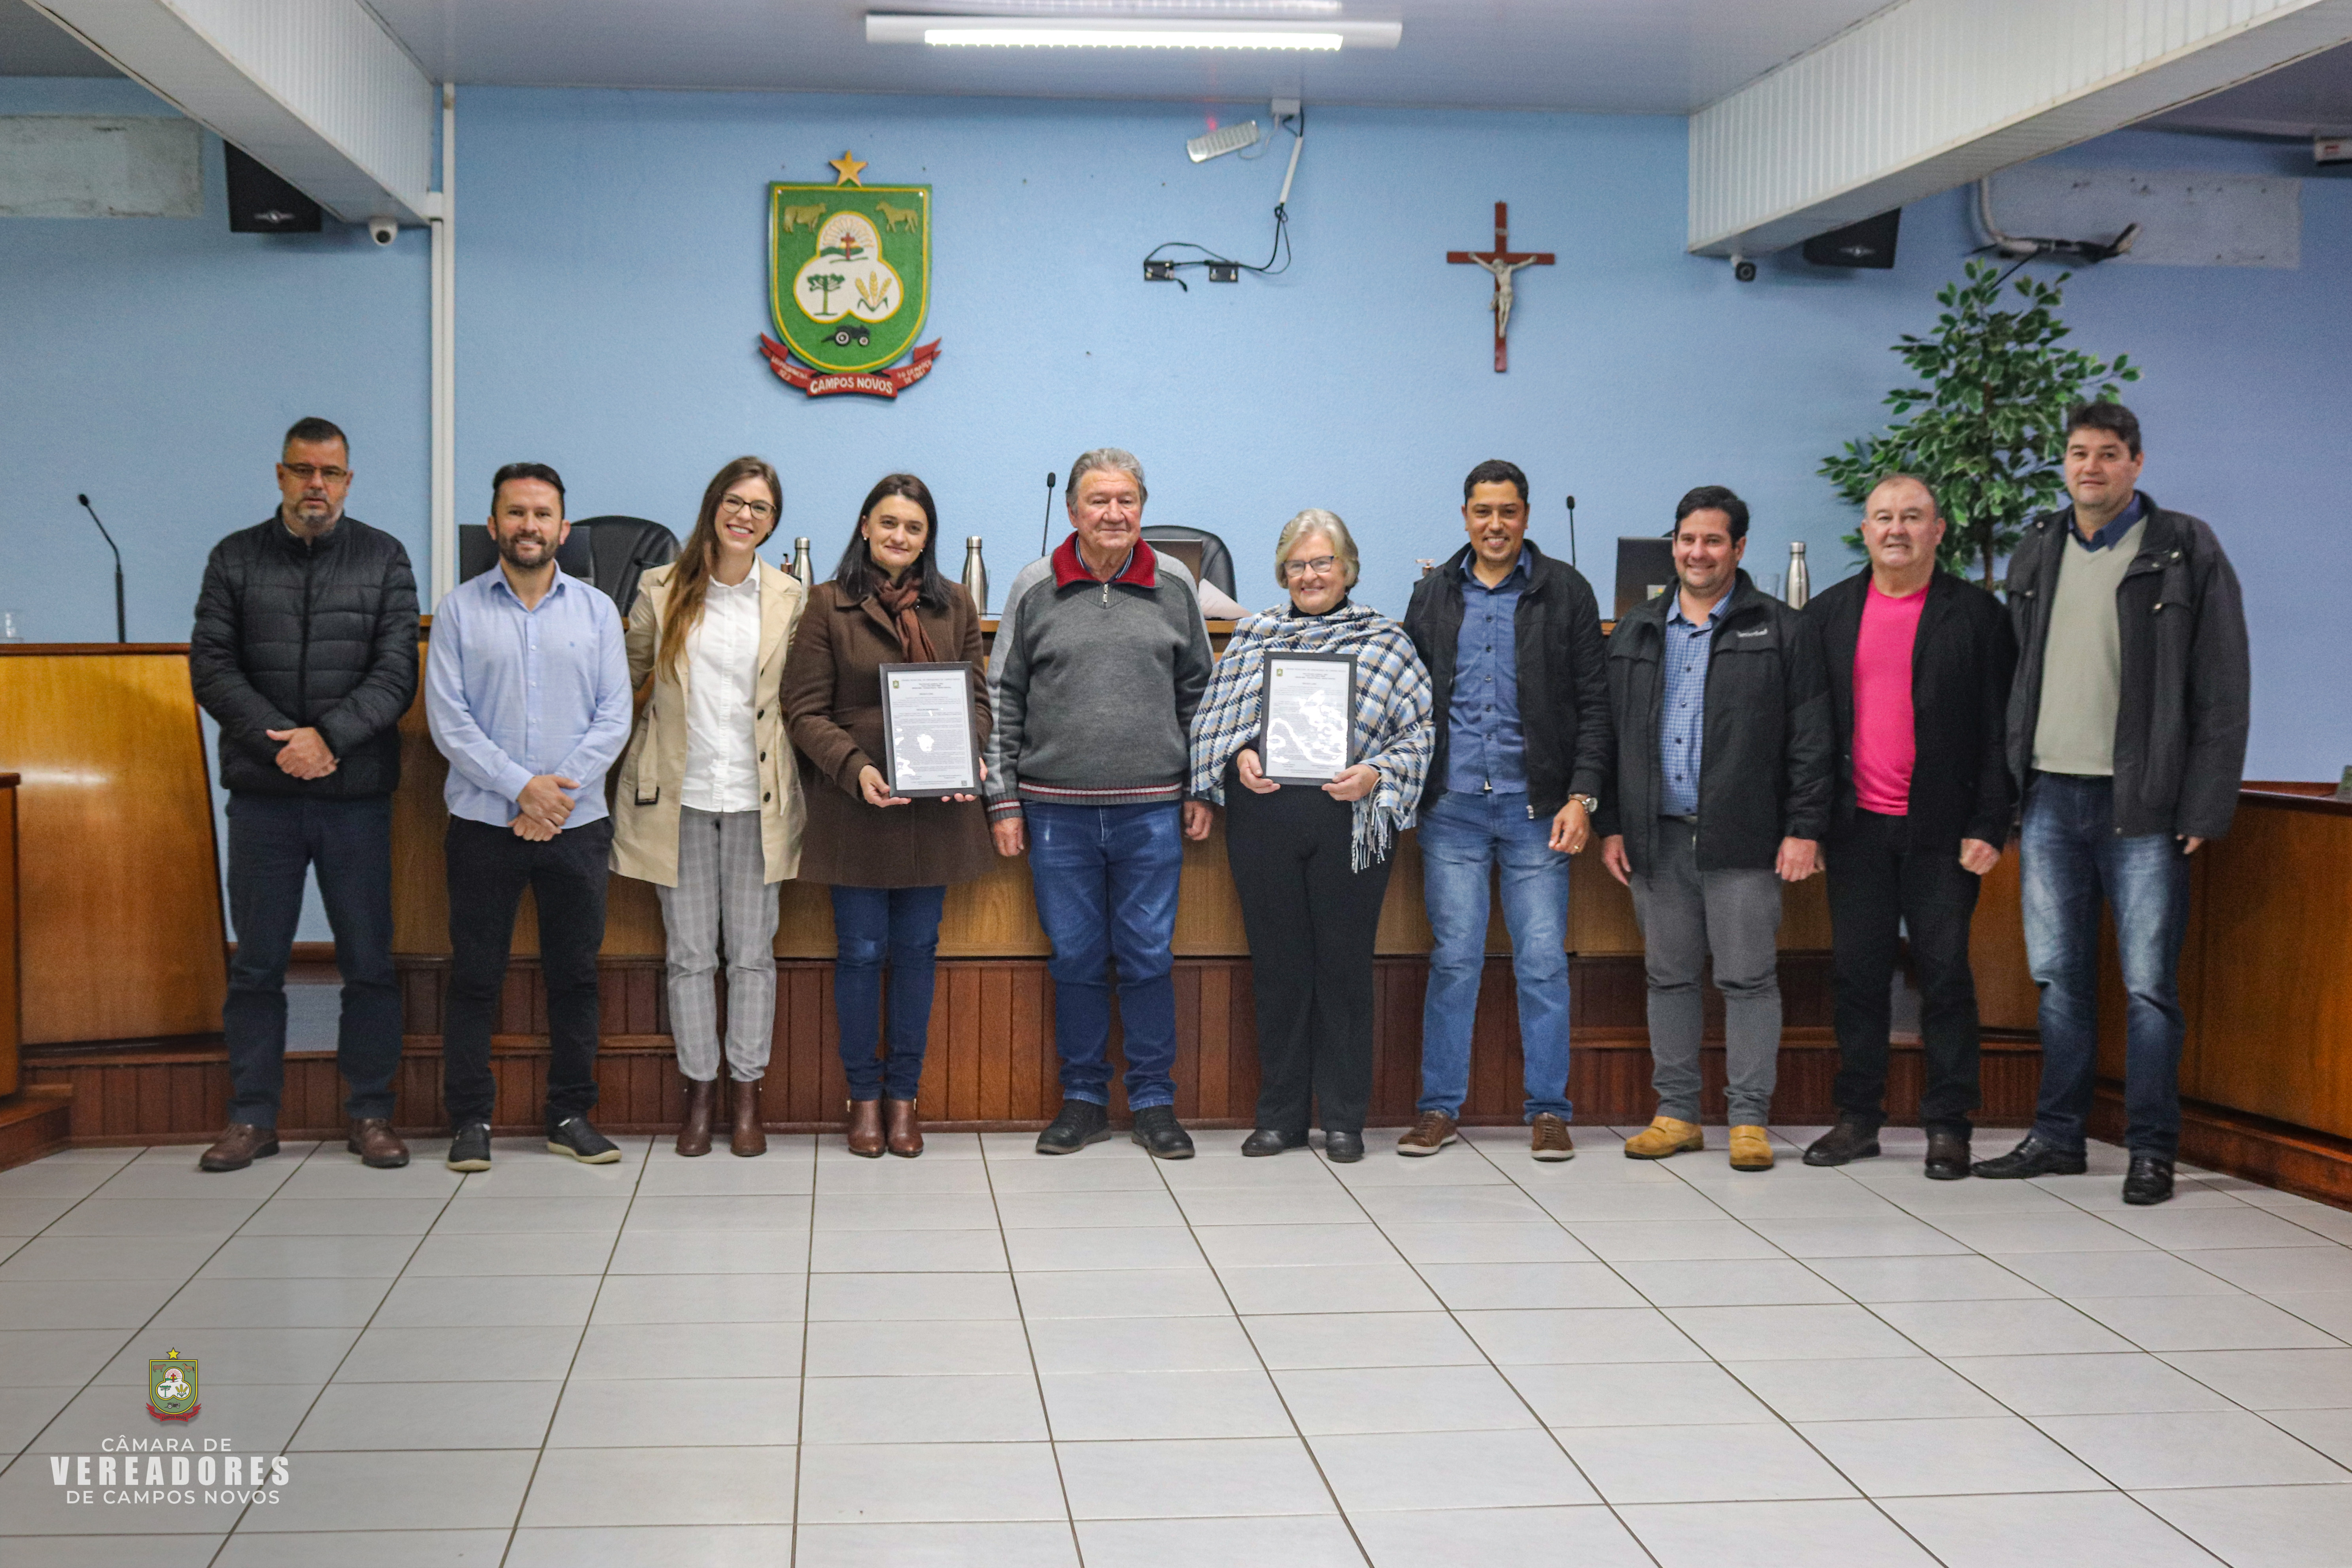 Vera Ottonelli e Zenita Rupp Lemos recebem “Moção de Parabenização” da Câmara de Vereadores